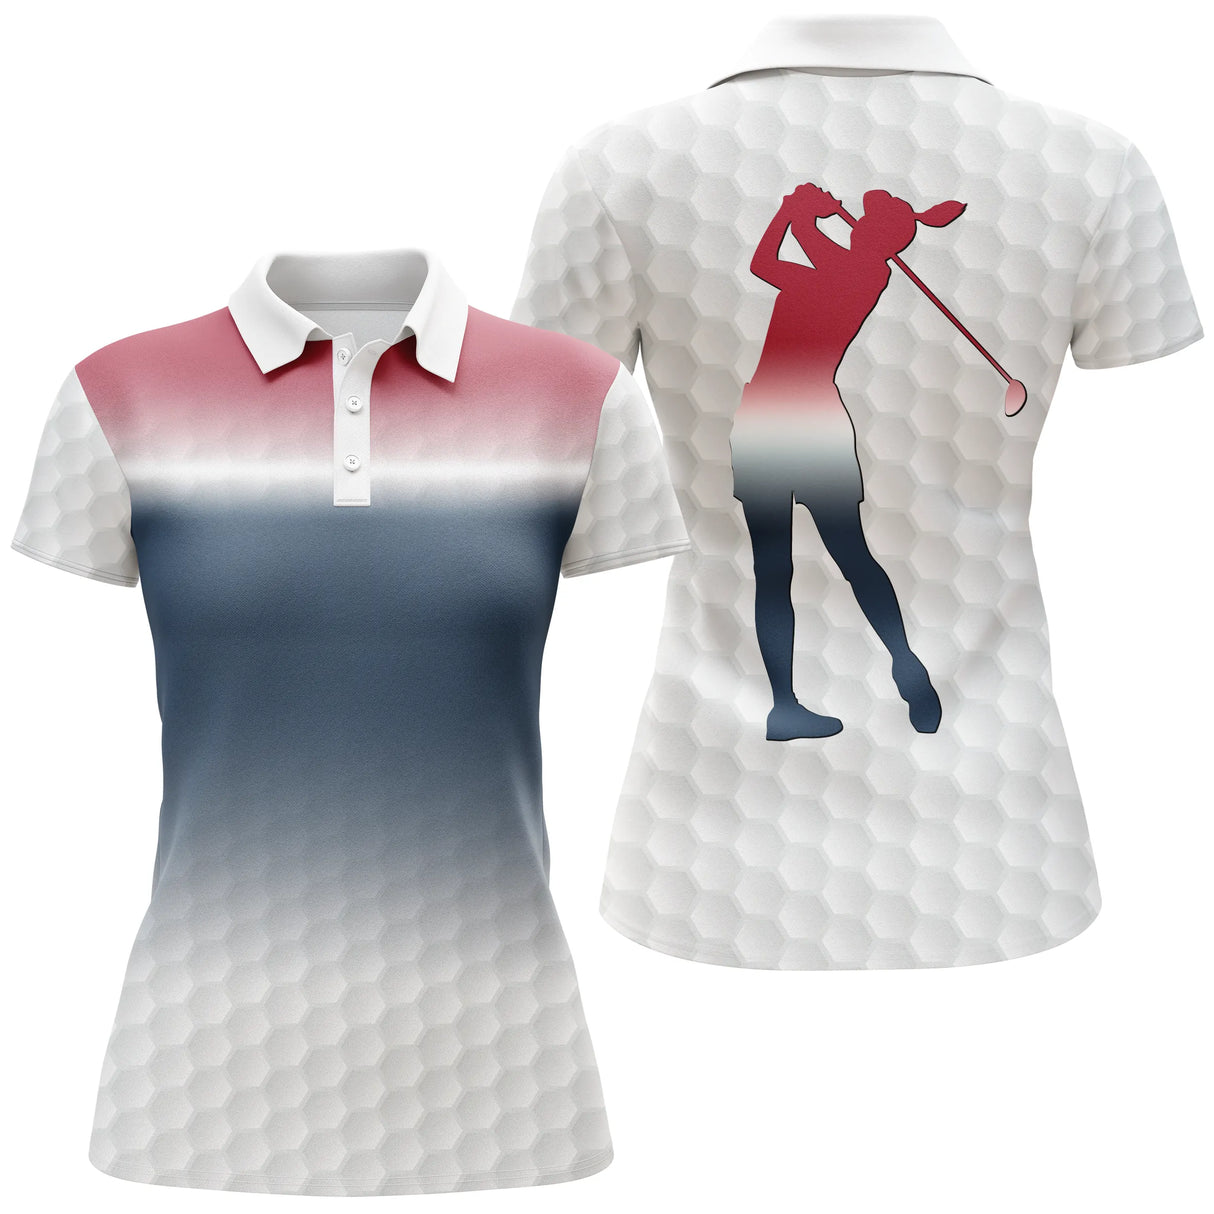 Chiptshirts - Polo da golf, regalo ideale per gli appassionati di golf, polo sportiva da uomo e da donna, modelli di palline da golf, golfista, golfista - CTS26052207